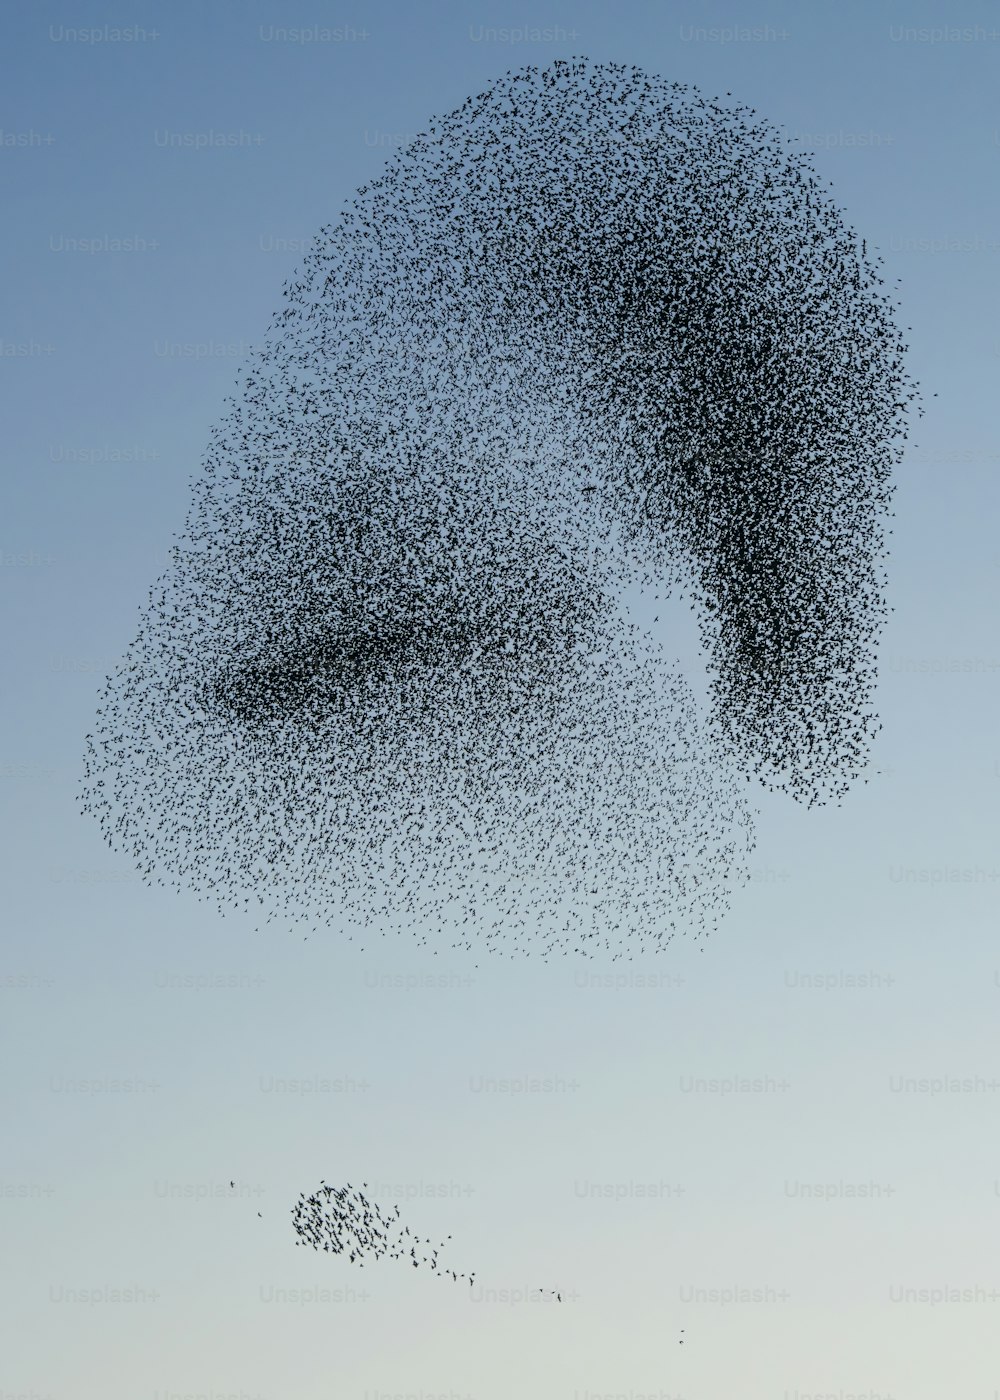 Beau grand troupeau d’étourneaux (Sturnus vulgaris), Geldermalsen aux Pays-Bas. En janvier et février, des centaines de milliers d’étourneaux se sont rassemblés dans d’immenses nuages.  Murmures d’étourneaux !